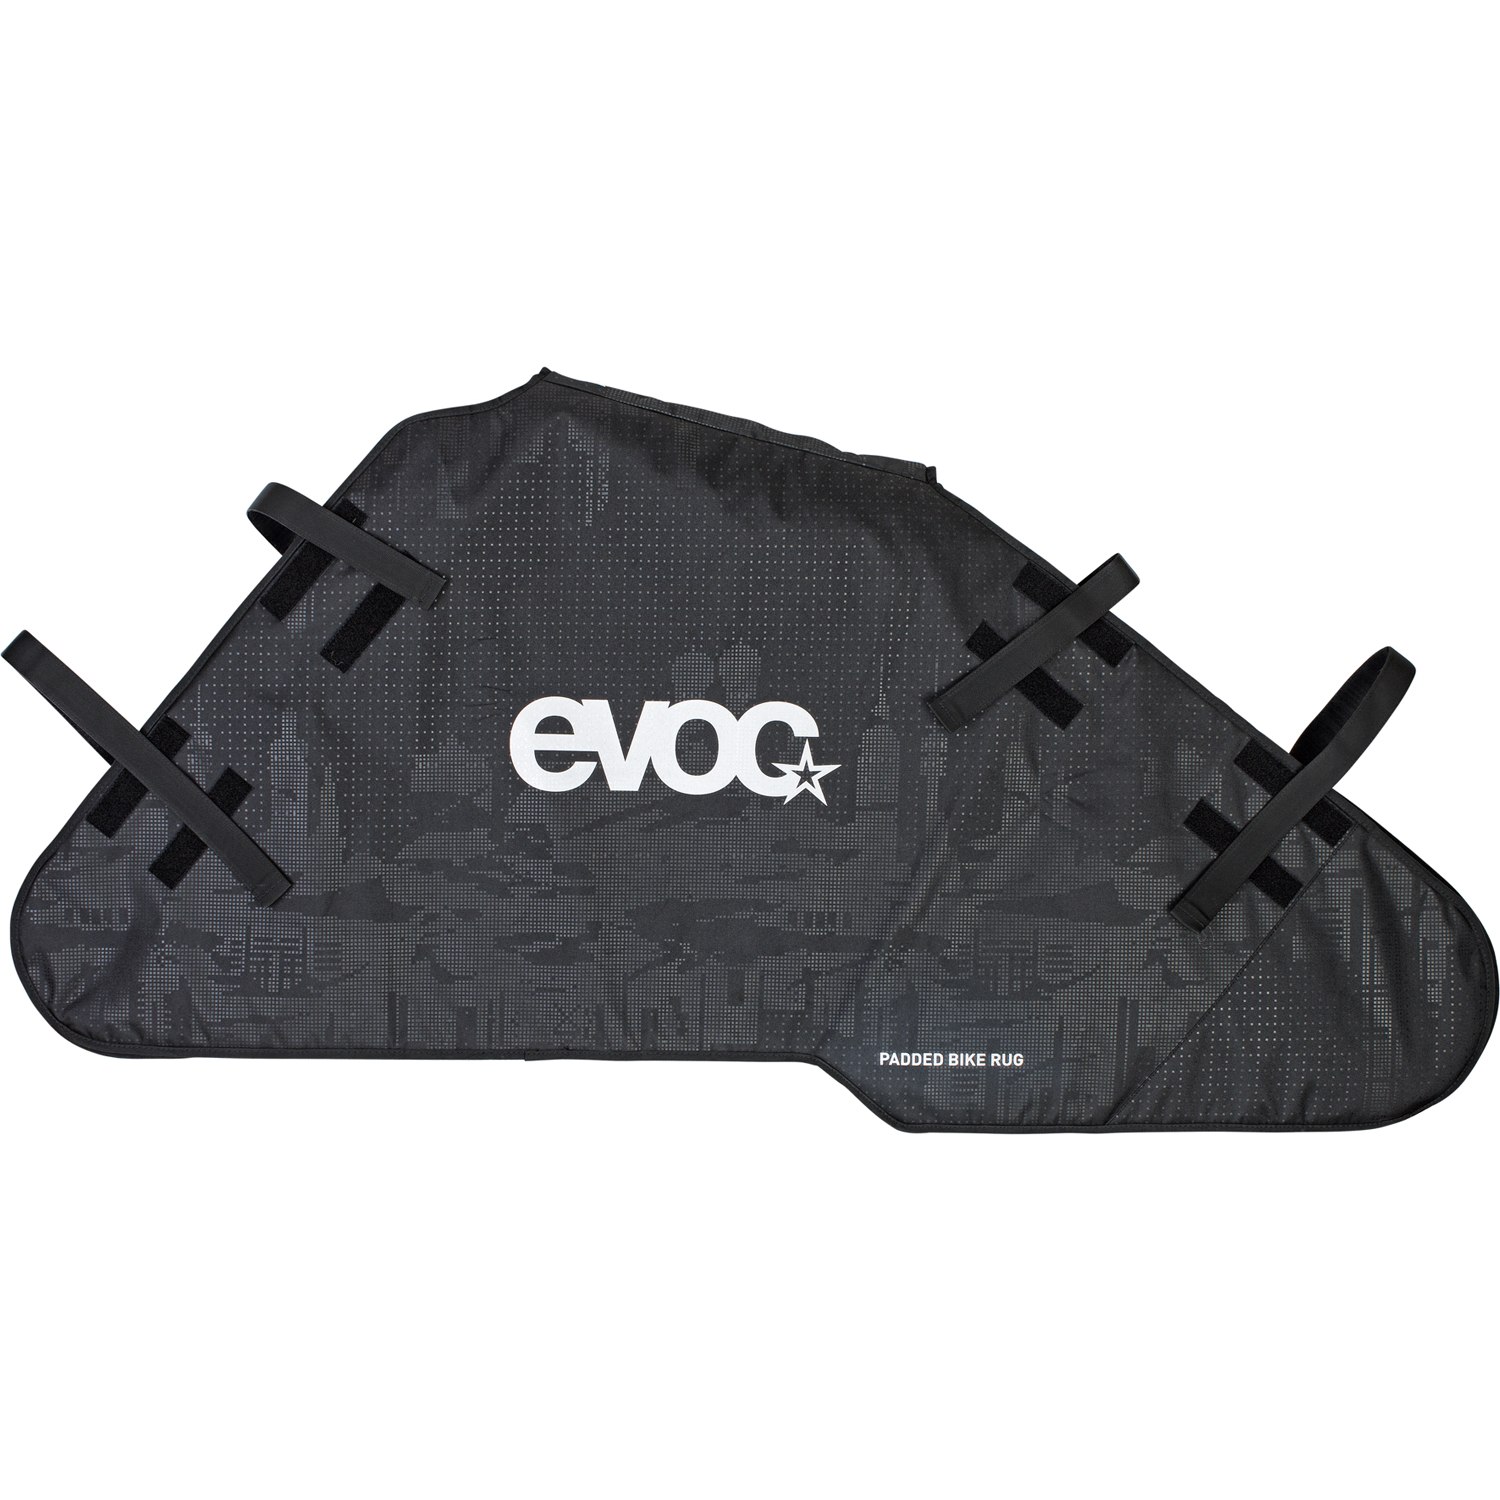 Image of Evoc PADDED BIKE RUG - Bike Cover Bag - Black